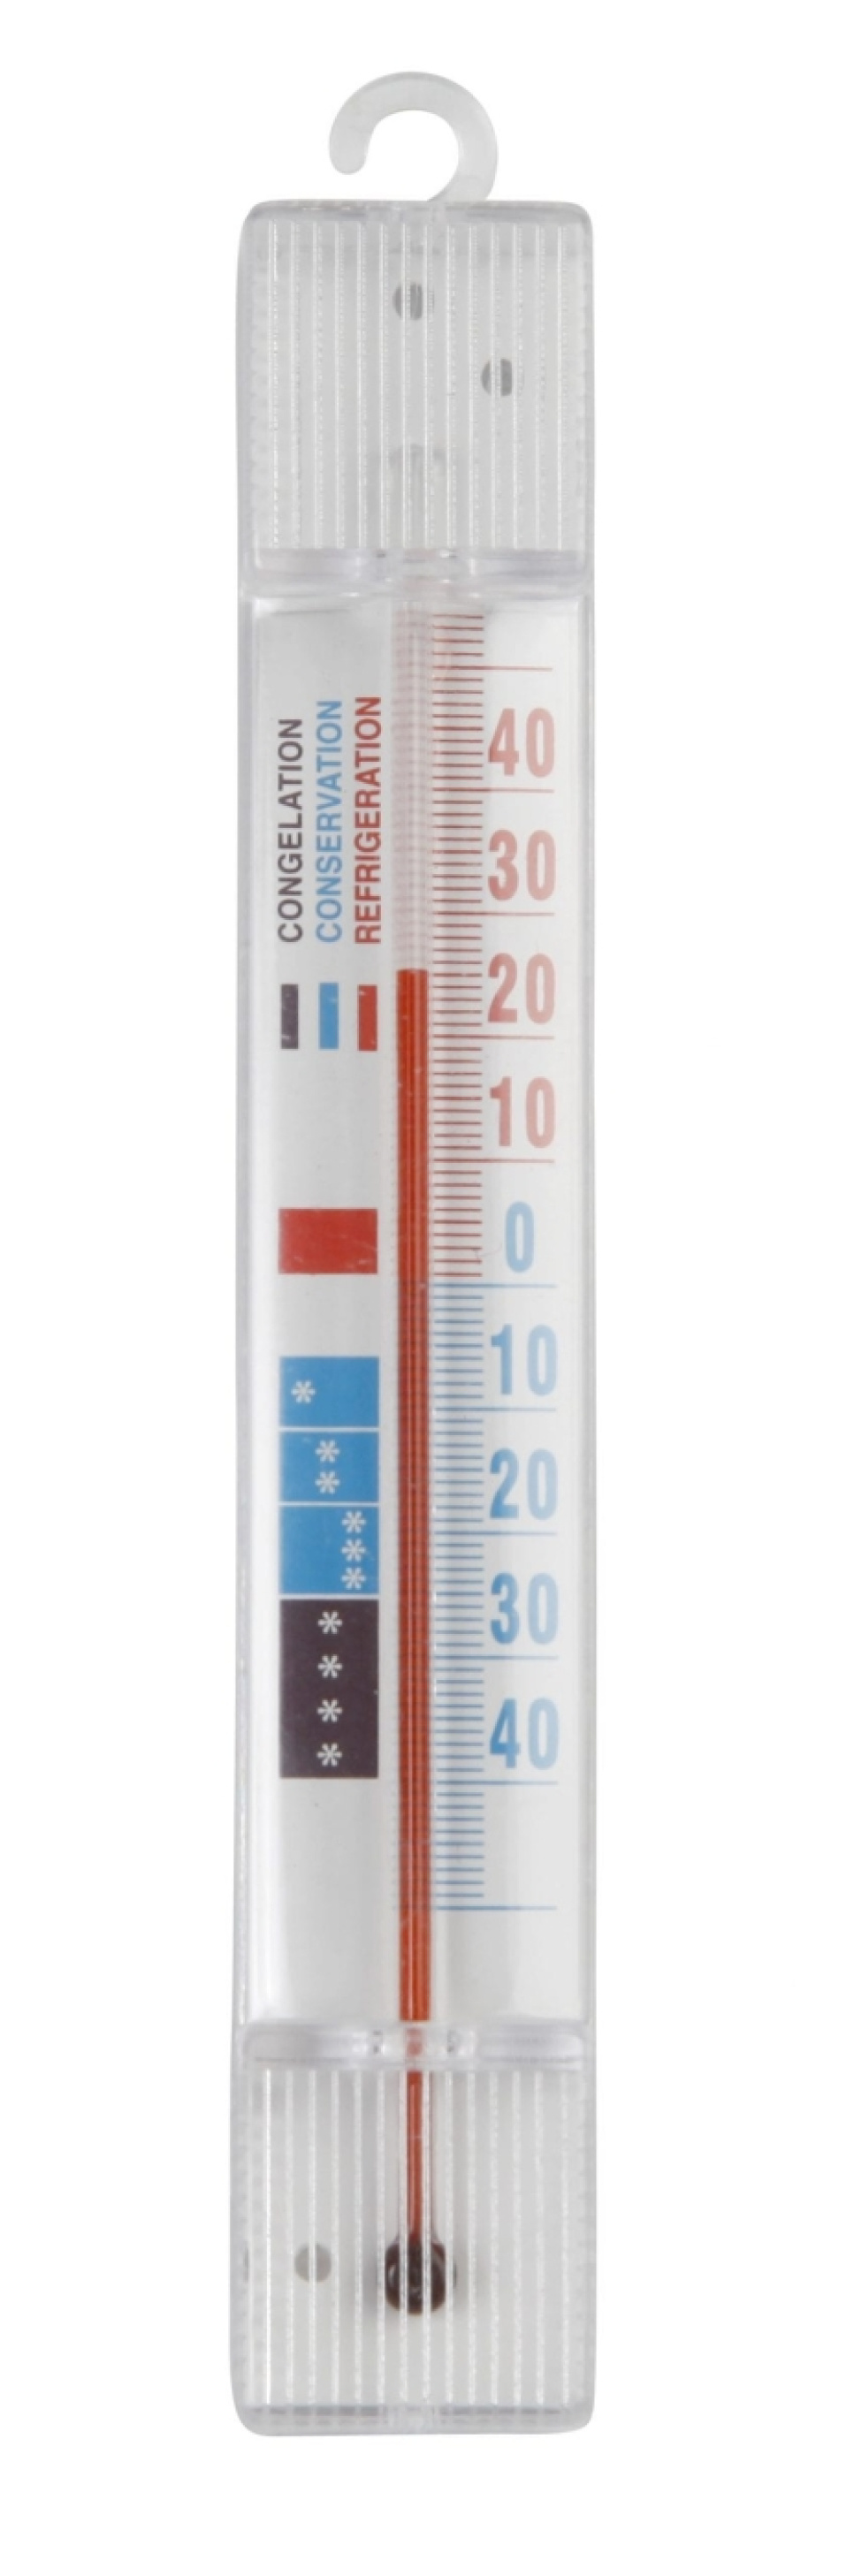 Frystermometer i gruppen Matlagning / Mätare & Mått / Kökstermometrar / Enkla termometrar hos KitchenLab (1071-10156)